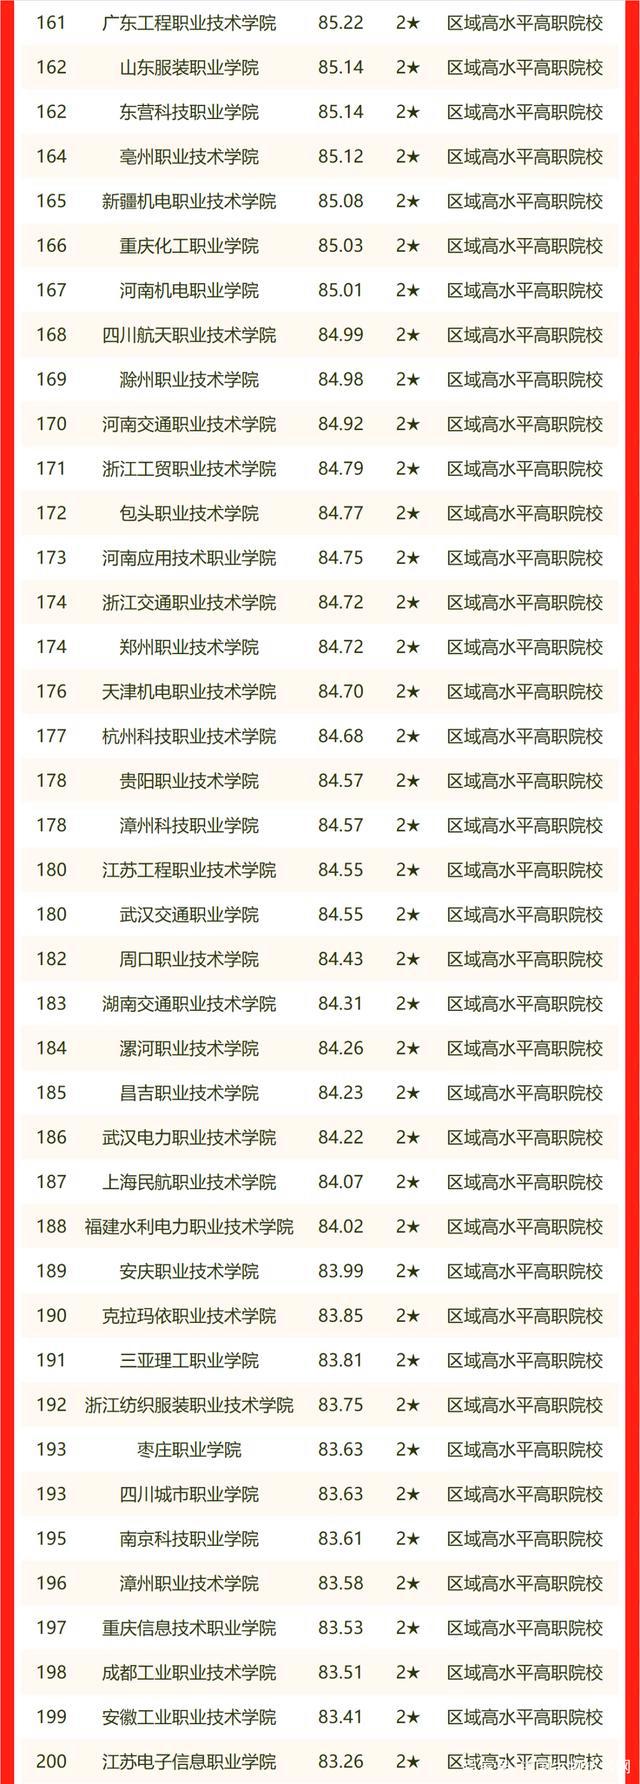 2022最新！中国高职院校排名公布，看看有没有自己院校